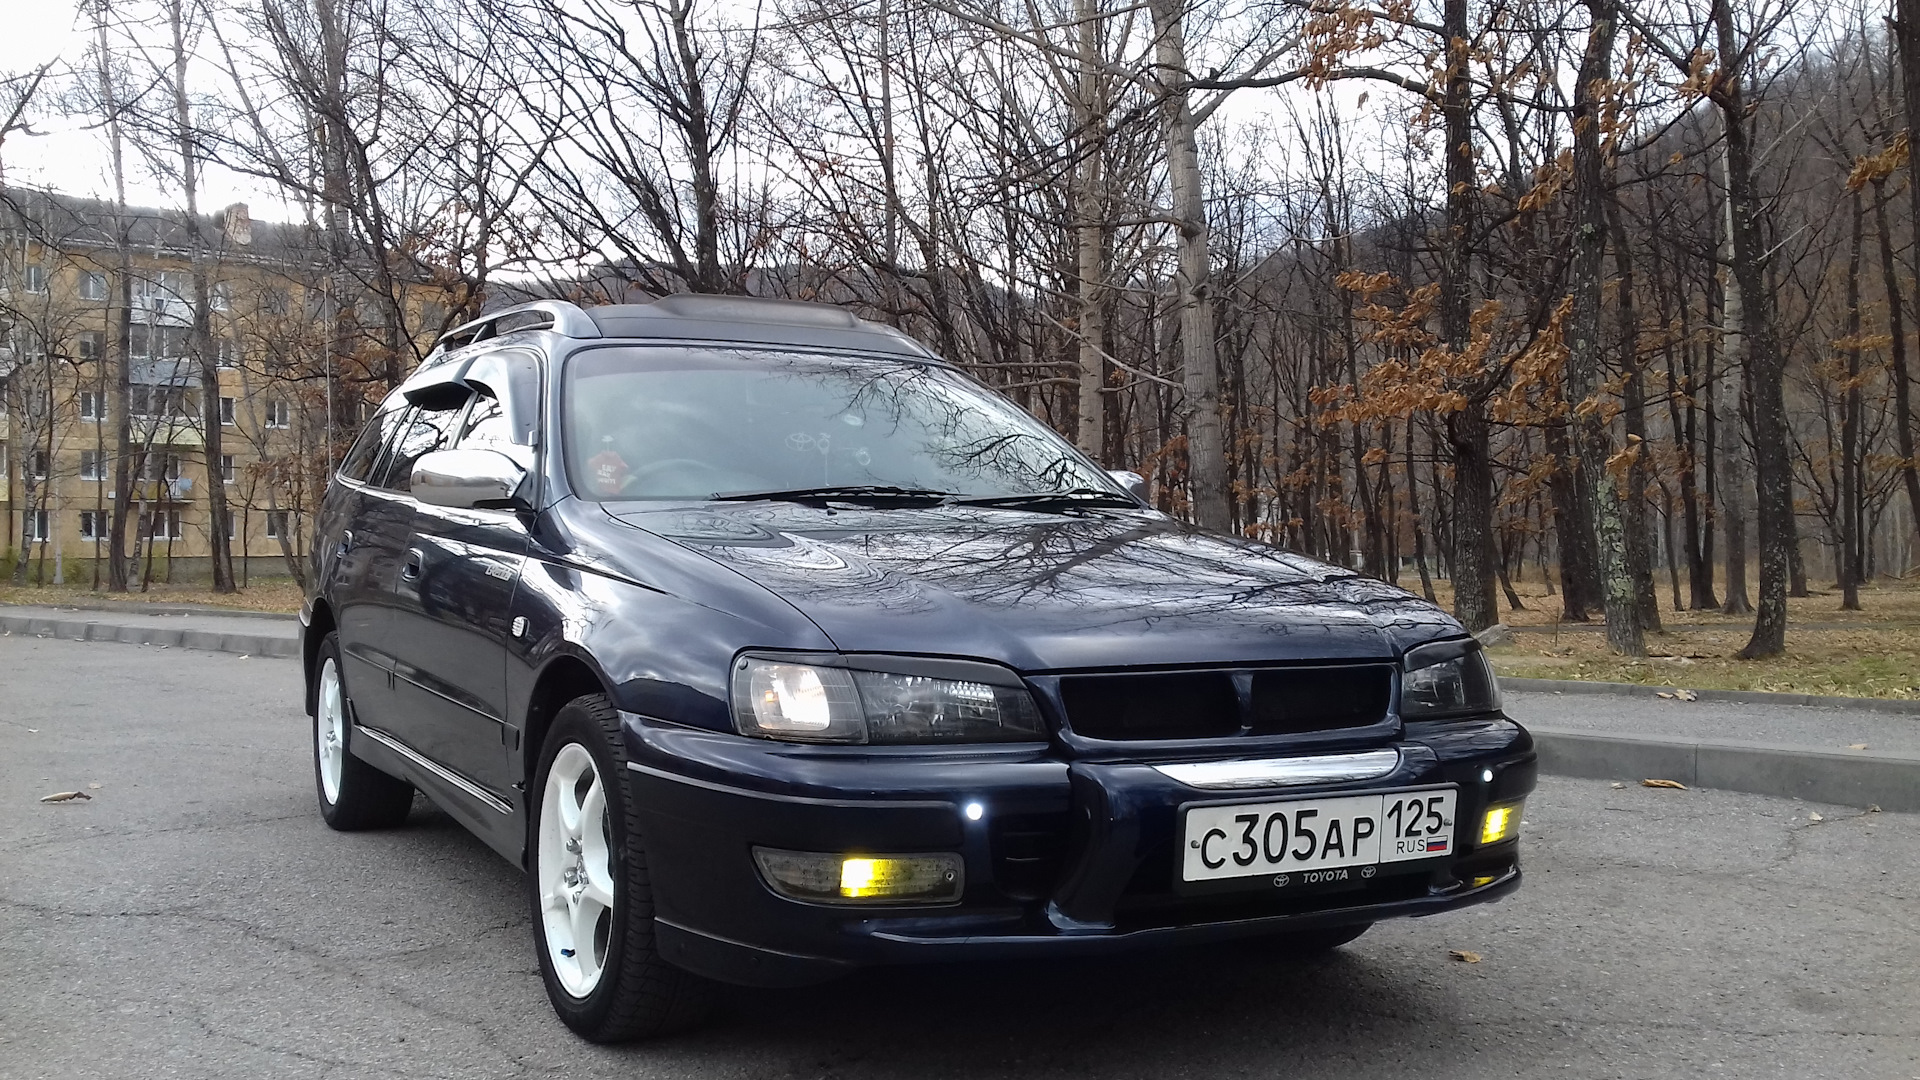 Тойота Калдина 1996 год цвет кузова